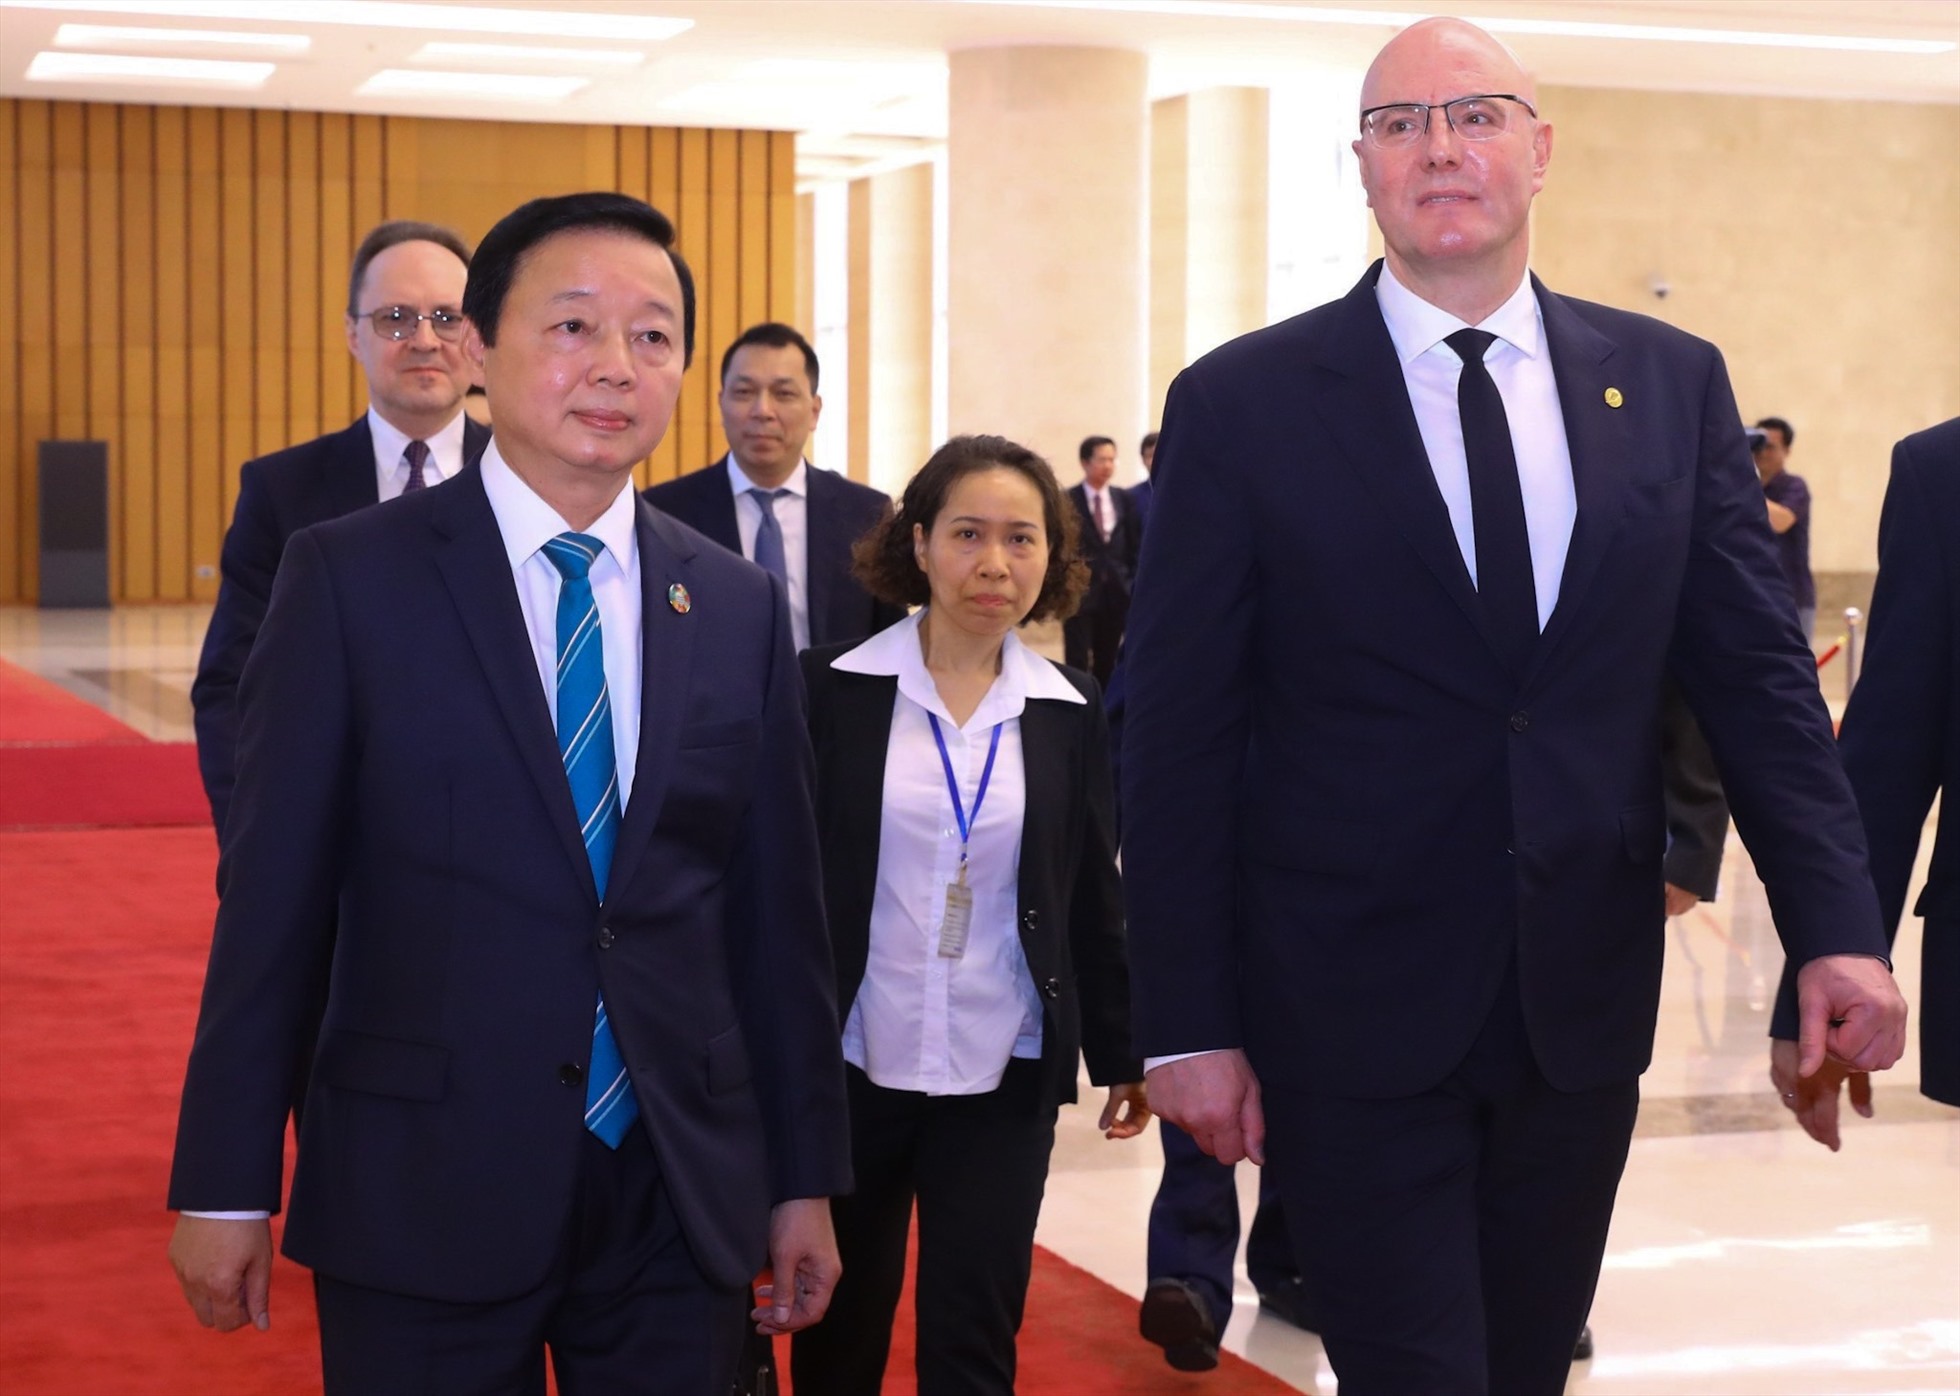 Phó Thủ tướng Nga Dmitry Chernysheno đang ở thăm chính thức Việt Nam, đồng chủ trì khóa họp lần thứ 24 Ủy ban liên Chính phủ Việt Nam - Liên bang Nga về hợp tác kinh tế - thương mại và khoa học - kỹ thuật. Ảnh: Hải Nguyễn